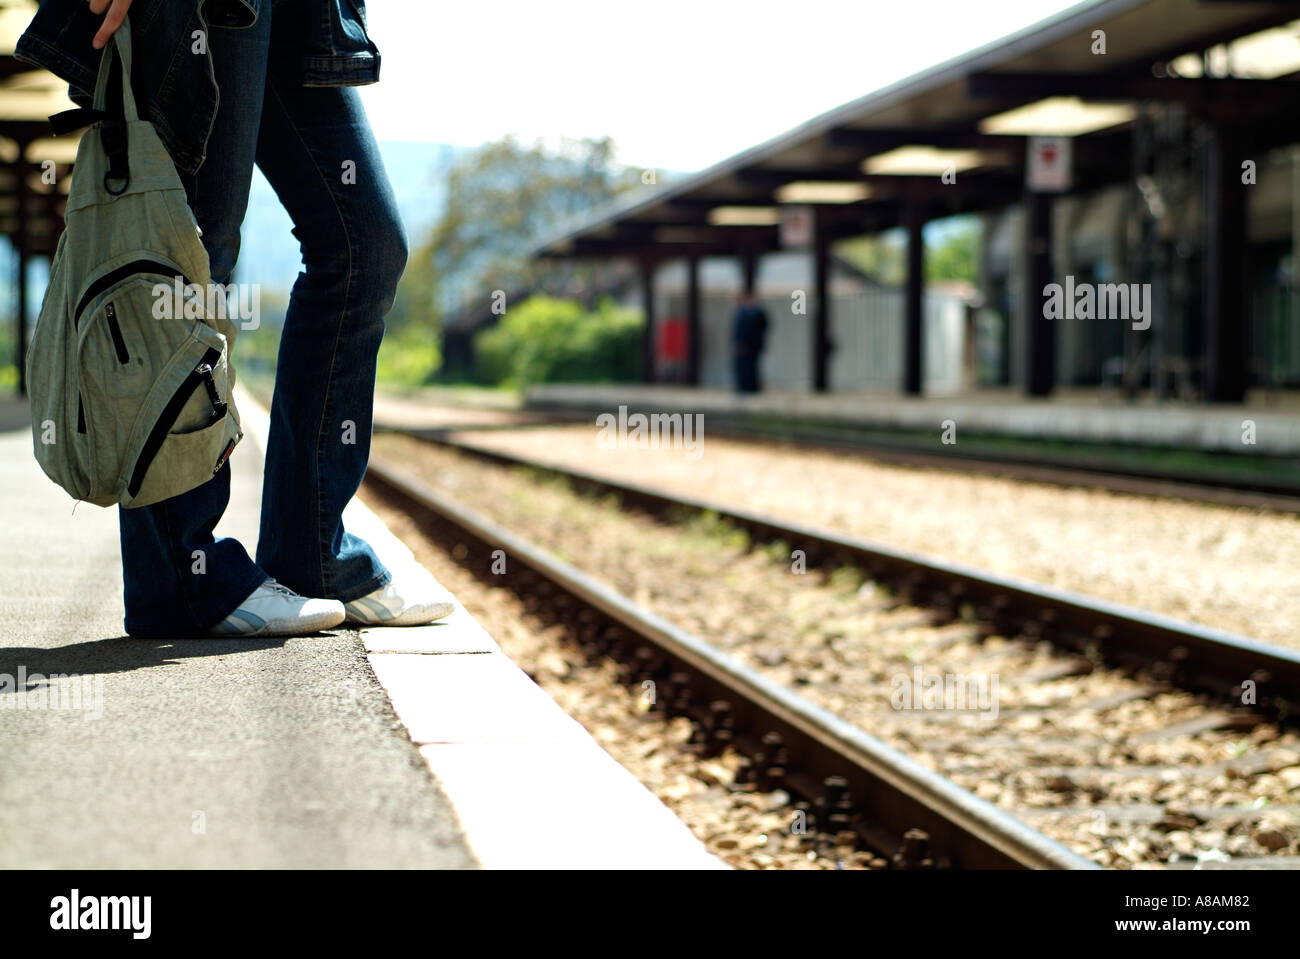 Femme Debout sur le bord d'une plate-forme du train en gare en attente d'un train Banque D'Images